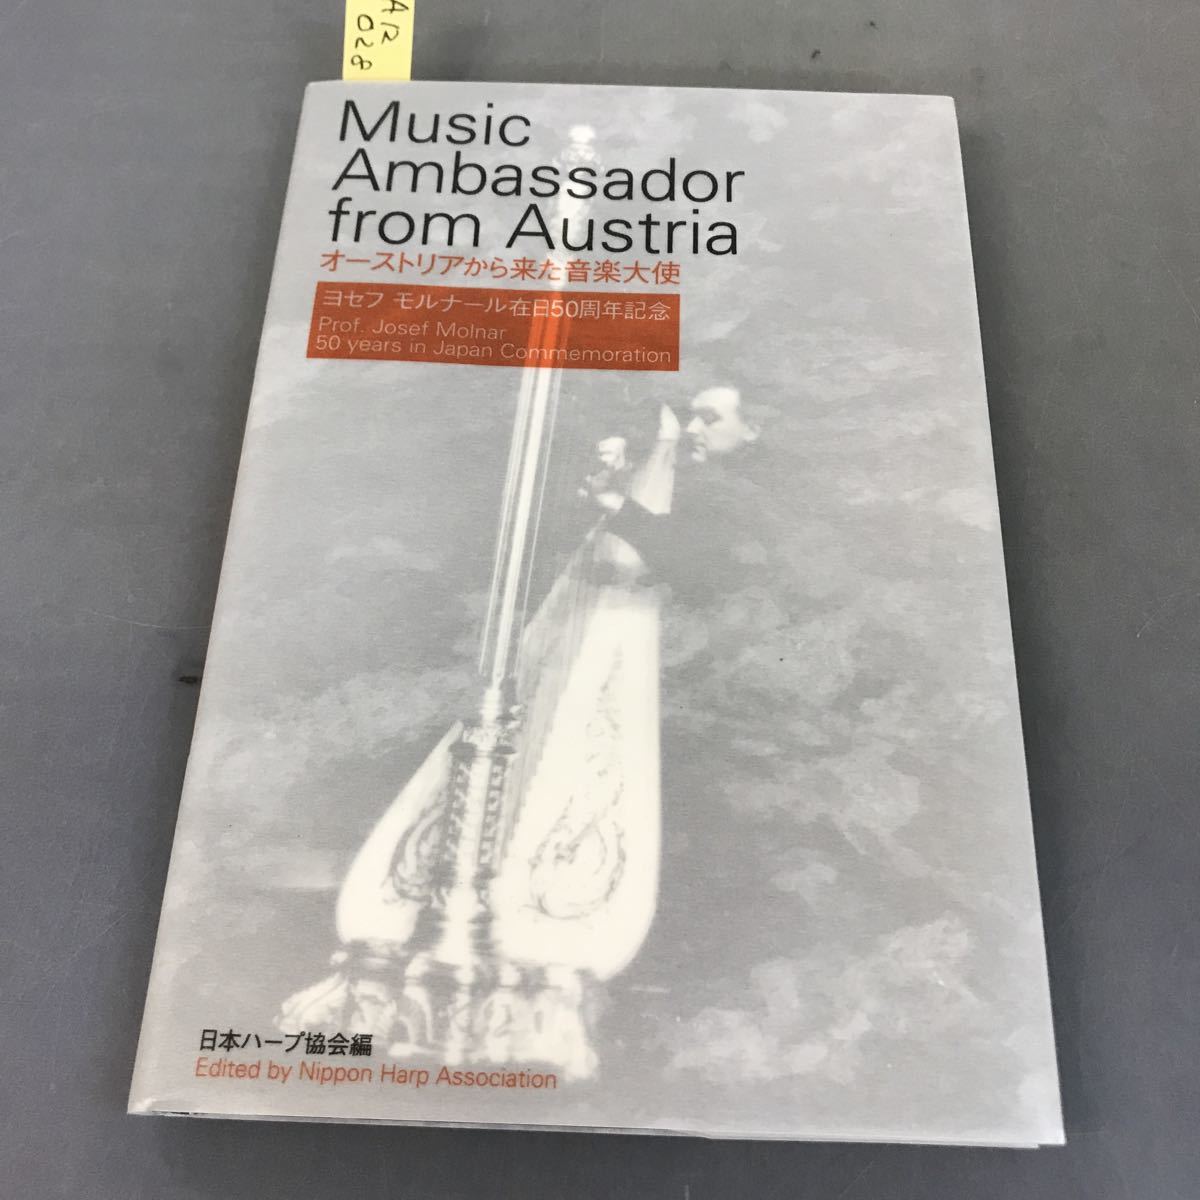 A12-028 オーストリアから来た音楽大使 ヨセフモルナール在日50周年記念 日本ハーブ協会編